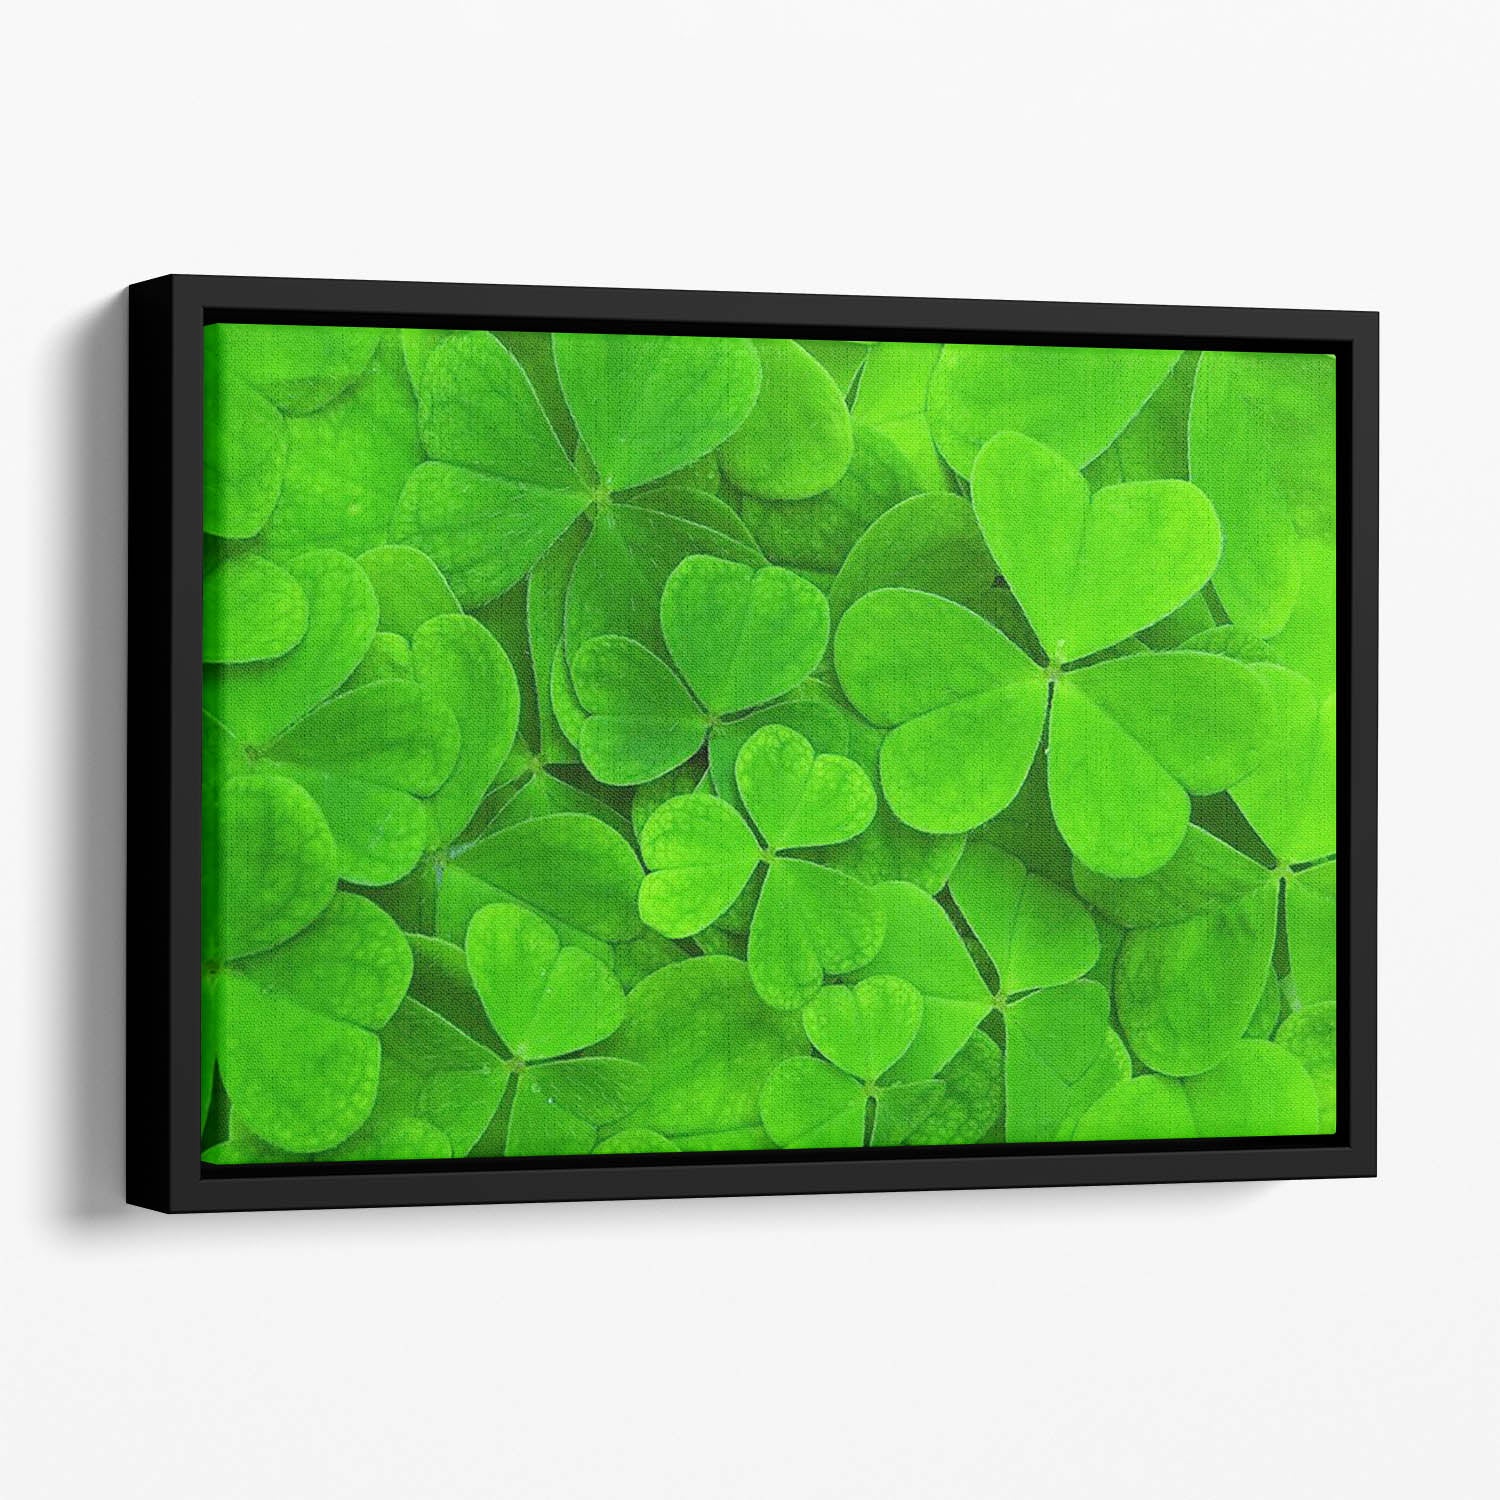 Green clover leaf Floating Framed Canvas